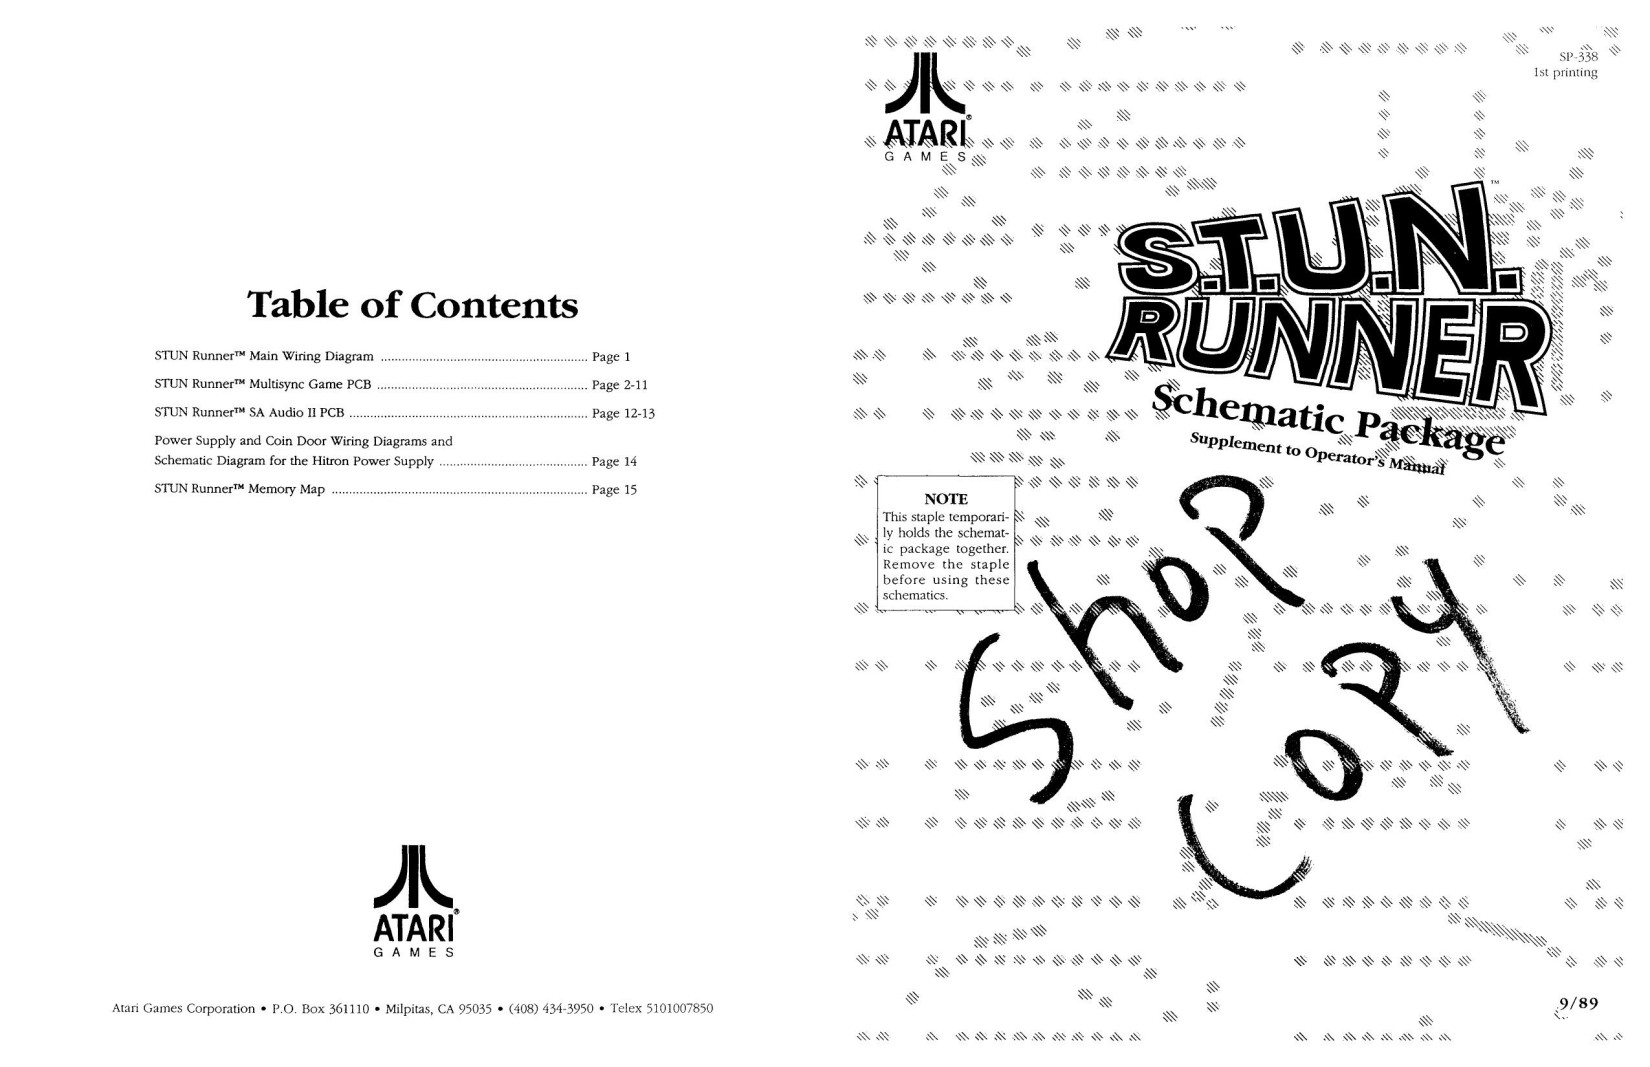 Stun Runner (SP-338 1st Printing) (Schematic Package) (U)